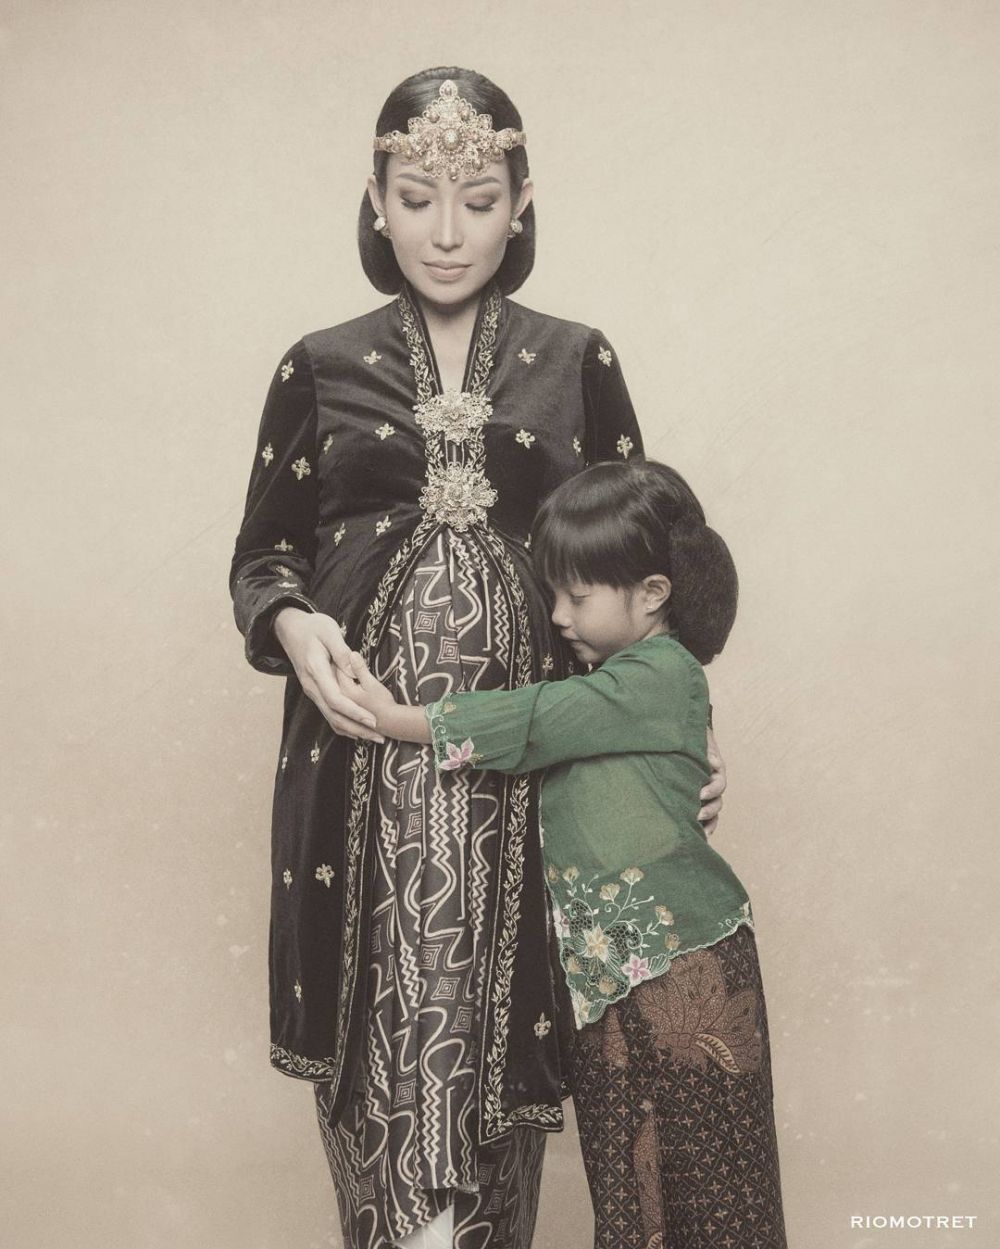 Gaya 12 seleb foto maternity berkonsep tradisional, klasik abis